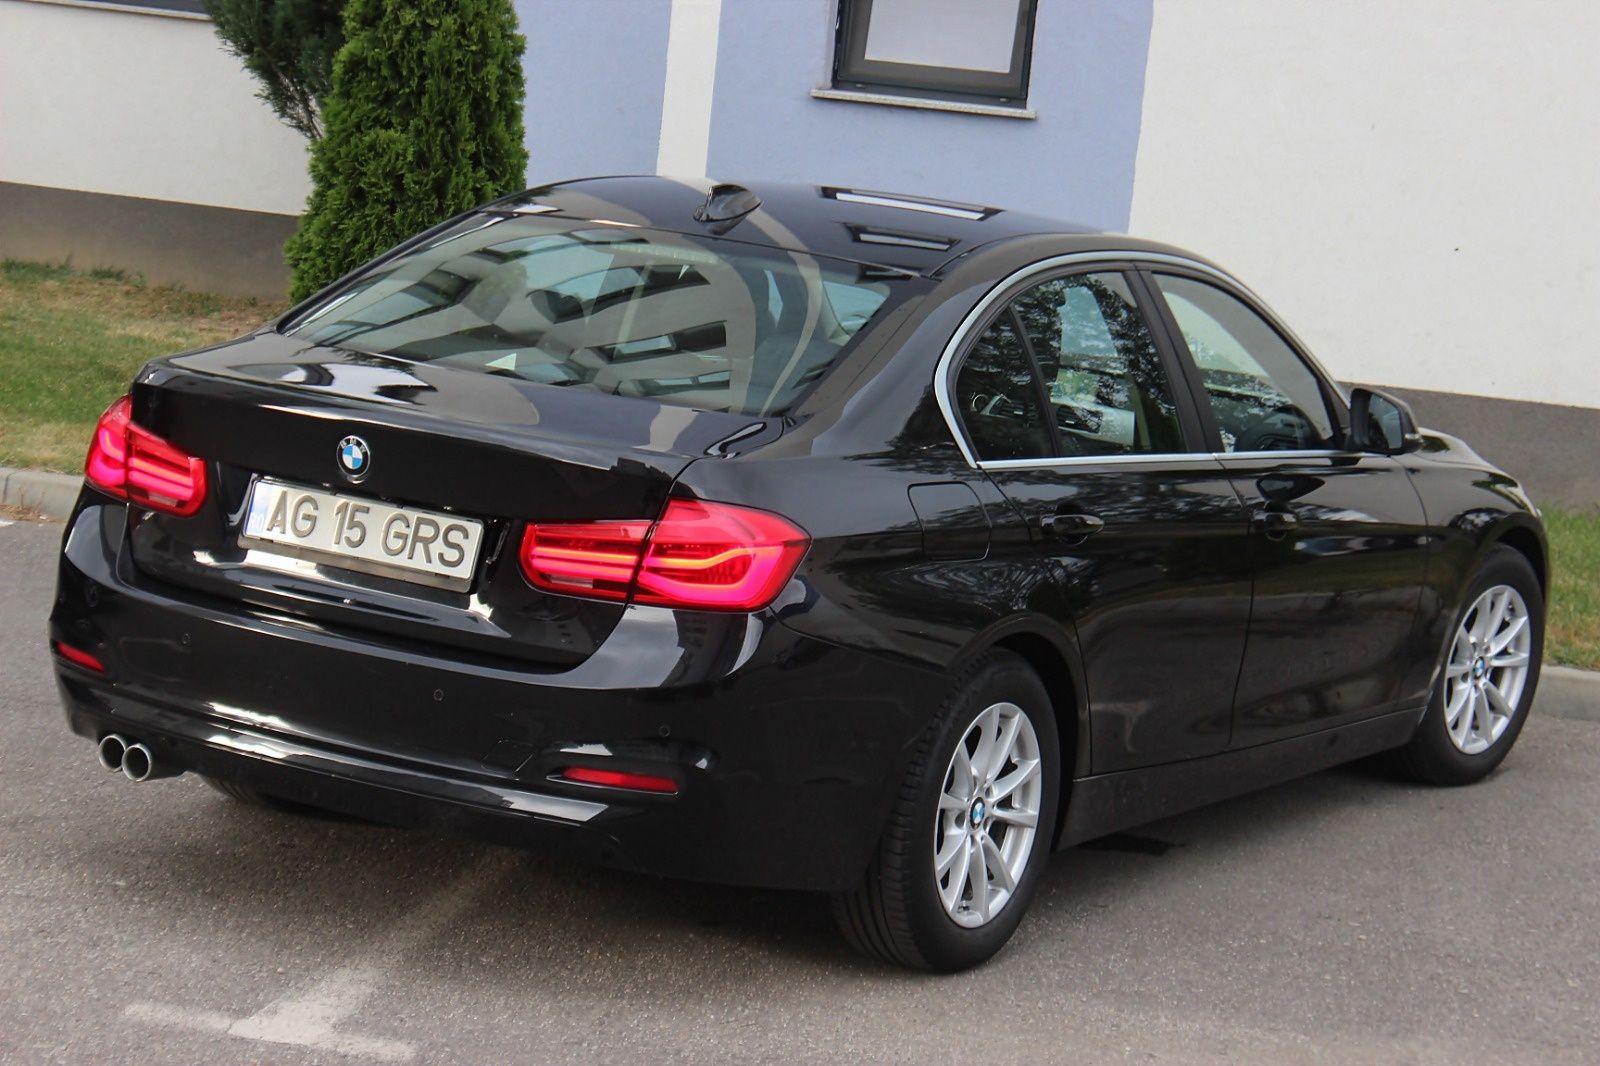 BMW Seria 3/F30/320d/Facelift/Euro 6/Led/Camera/Automat/Unic Proprieta